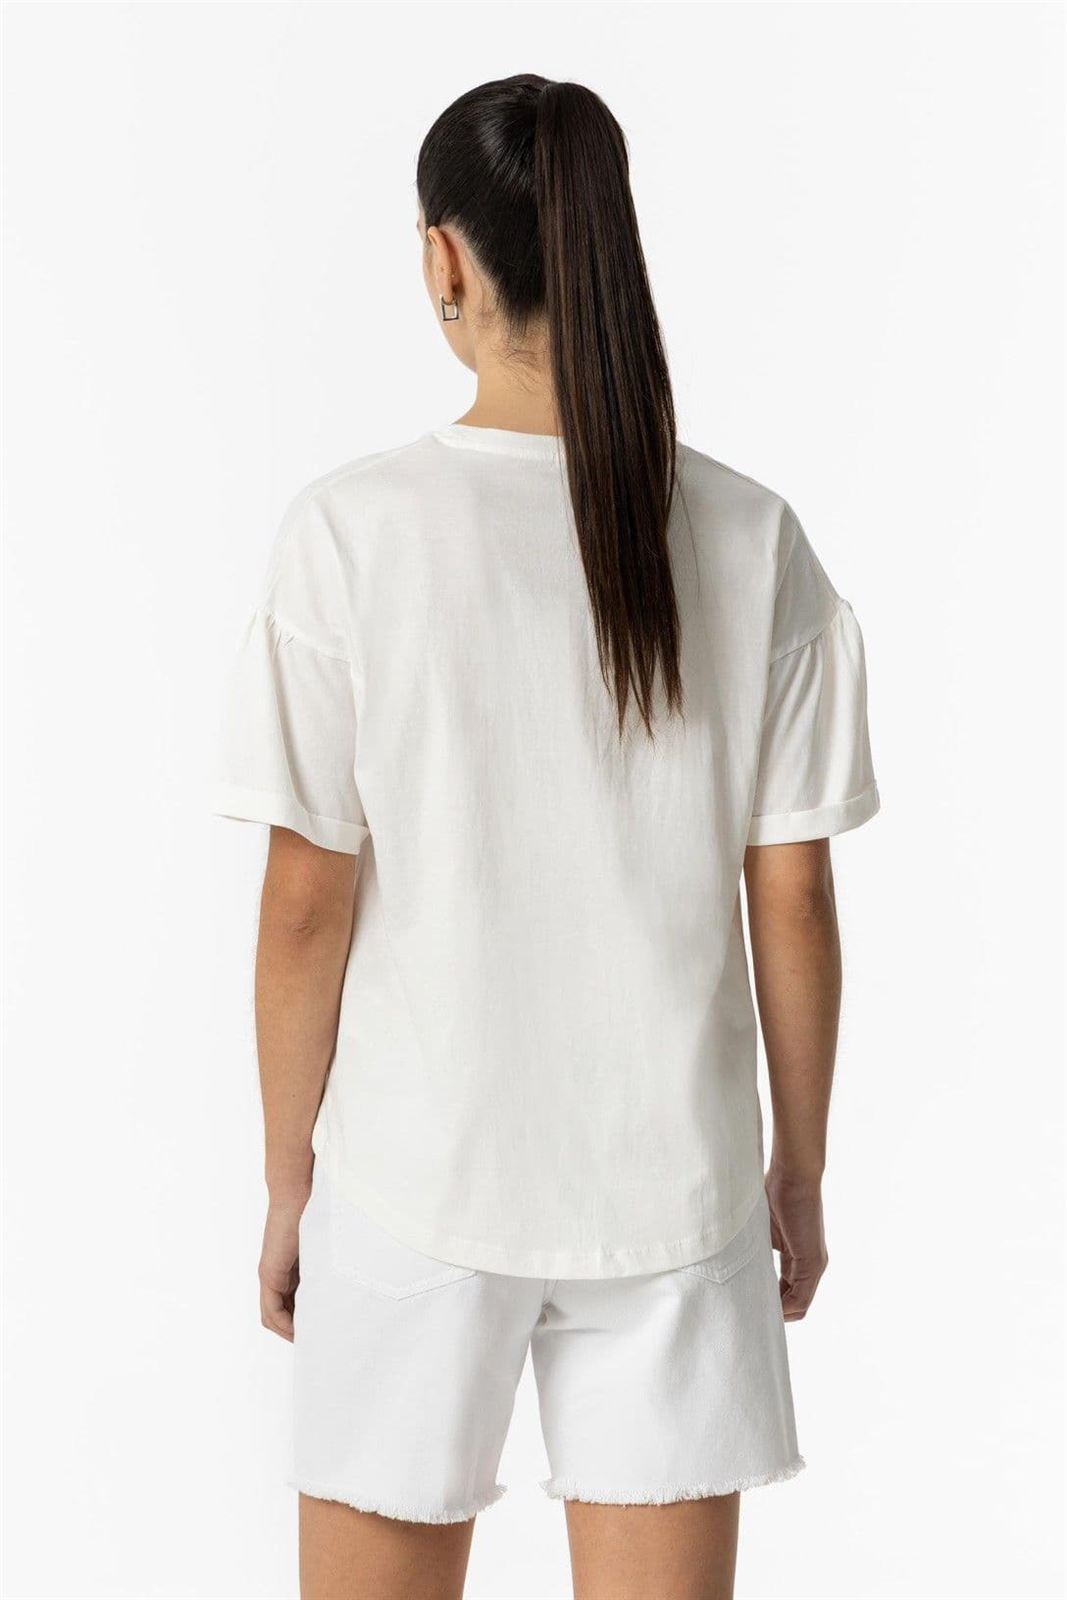 Camiseta blanca Estampado Frontal con Apliques, Filo - Imagen 3